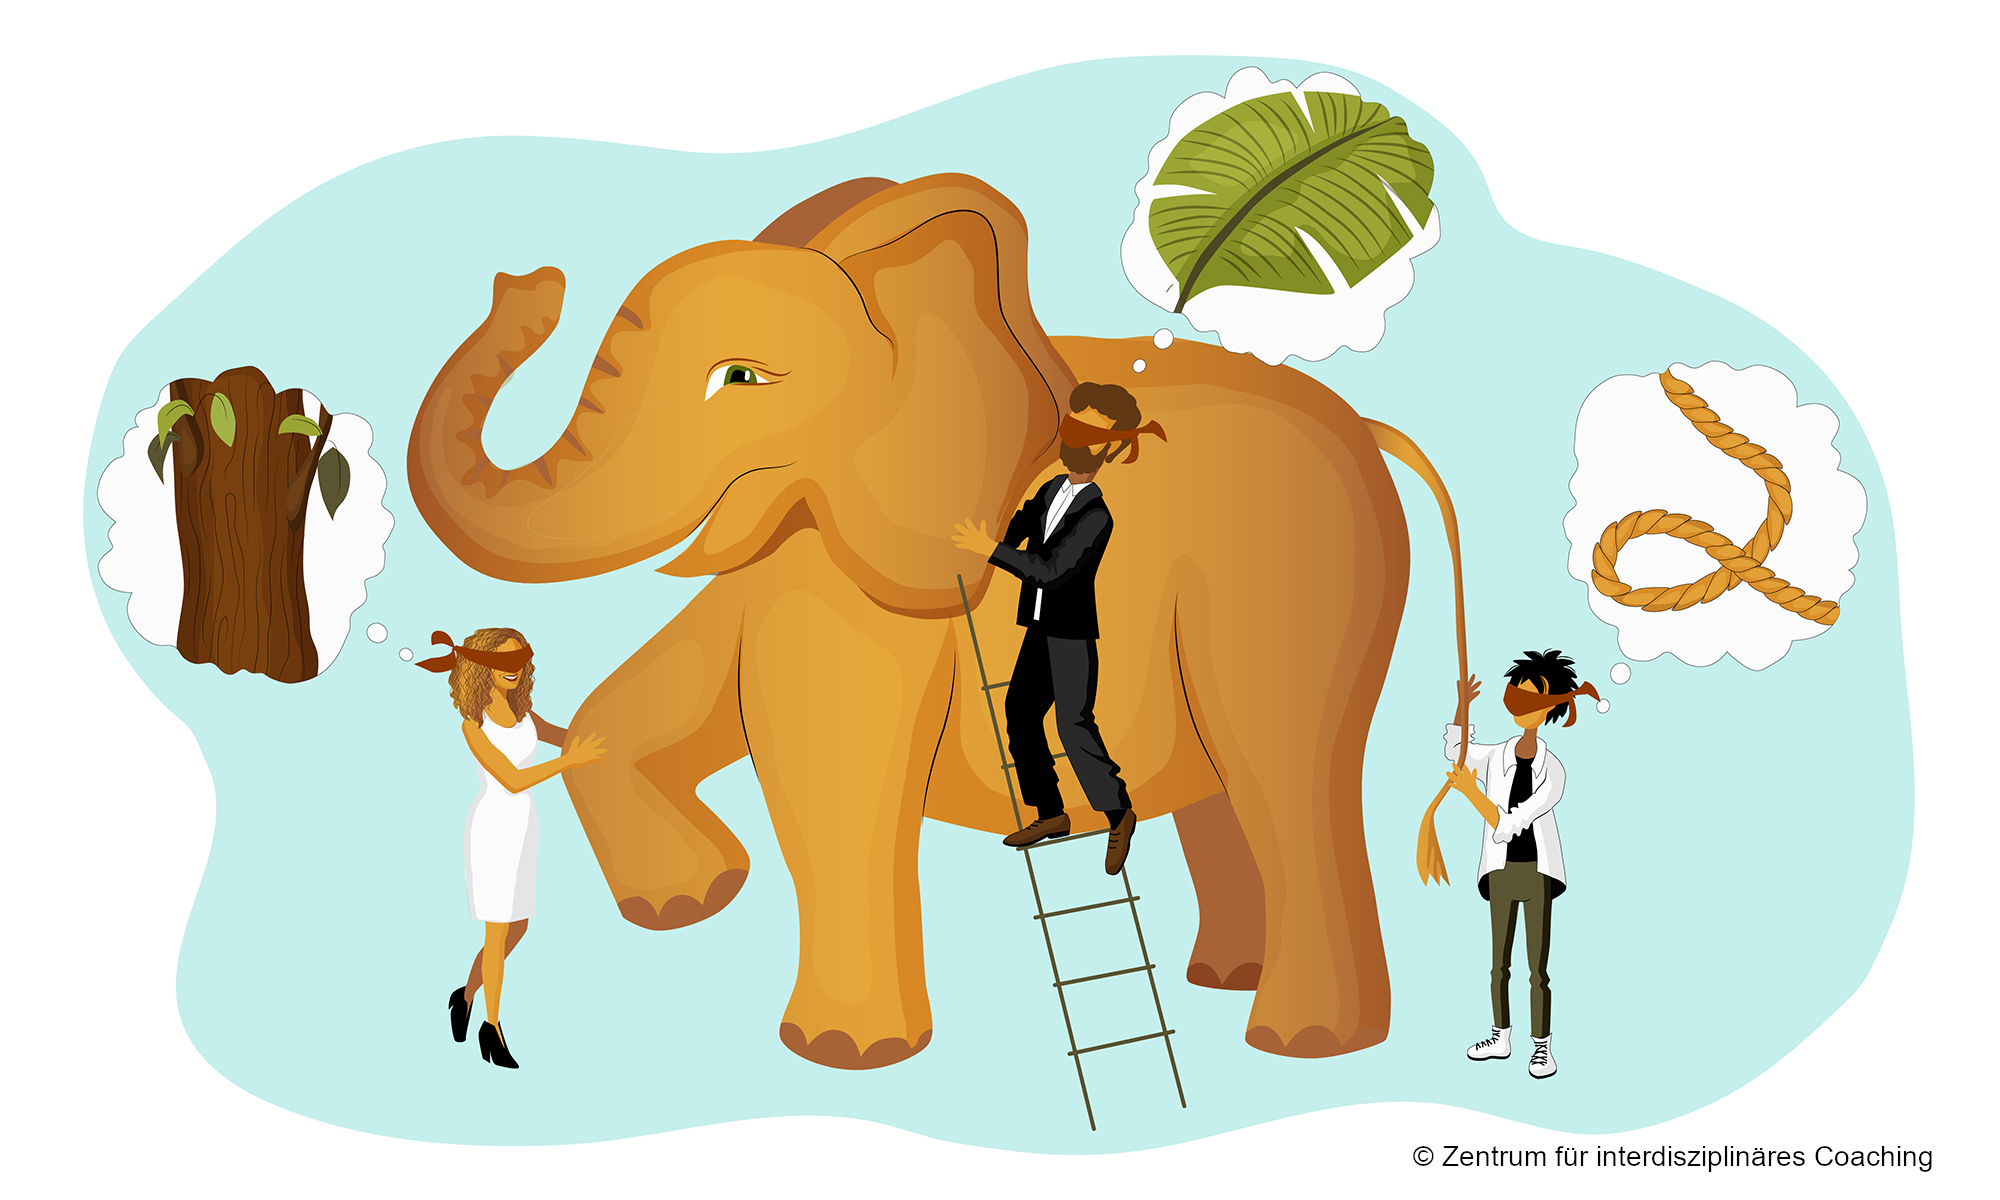 Was ein Elefant mit einer interdisziplinären Coaching-Ausbildung zu tun hat